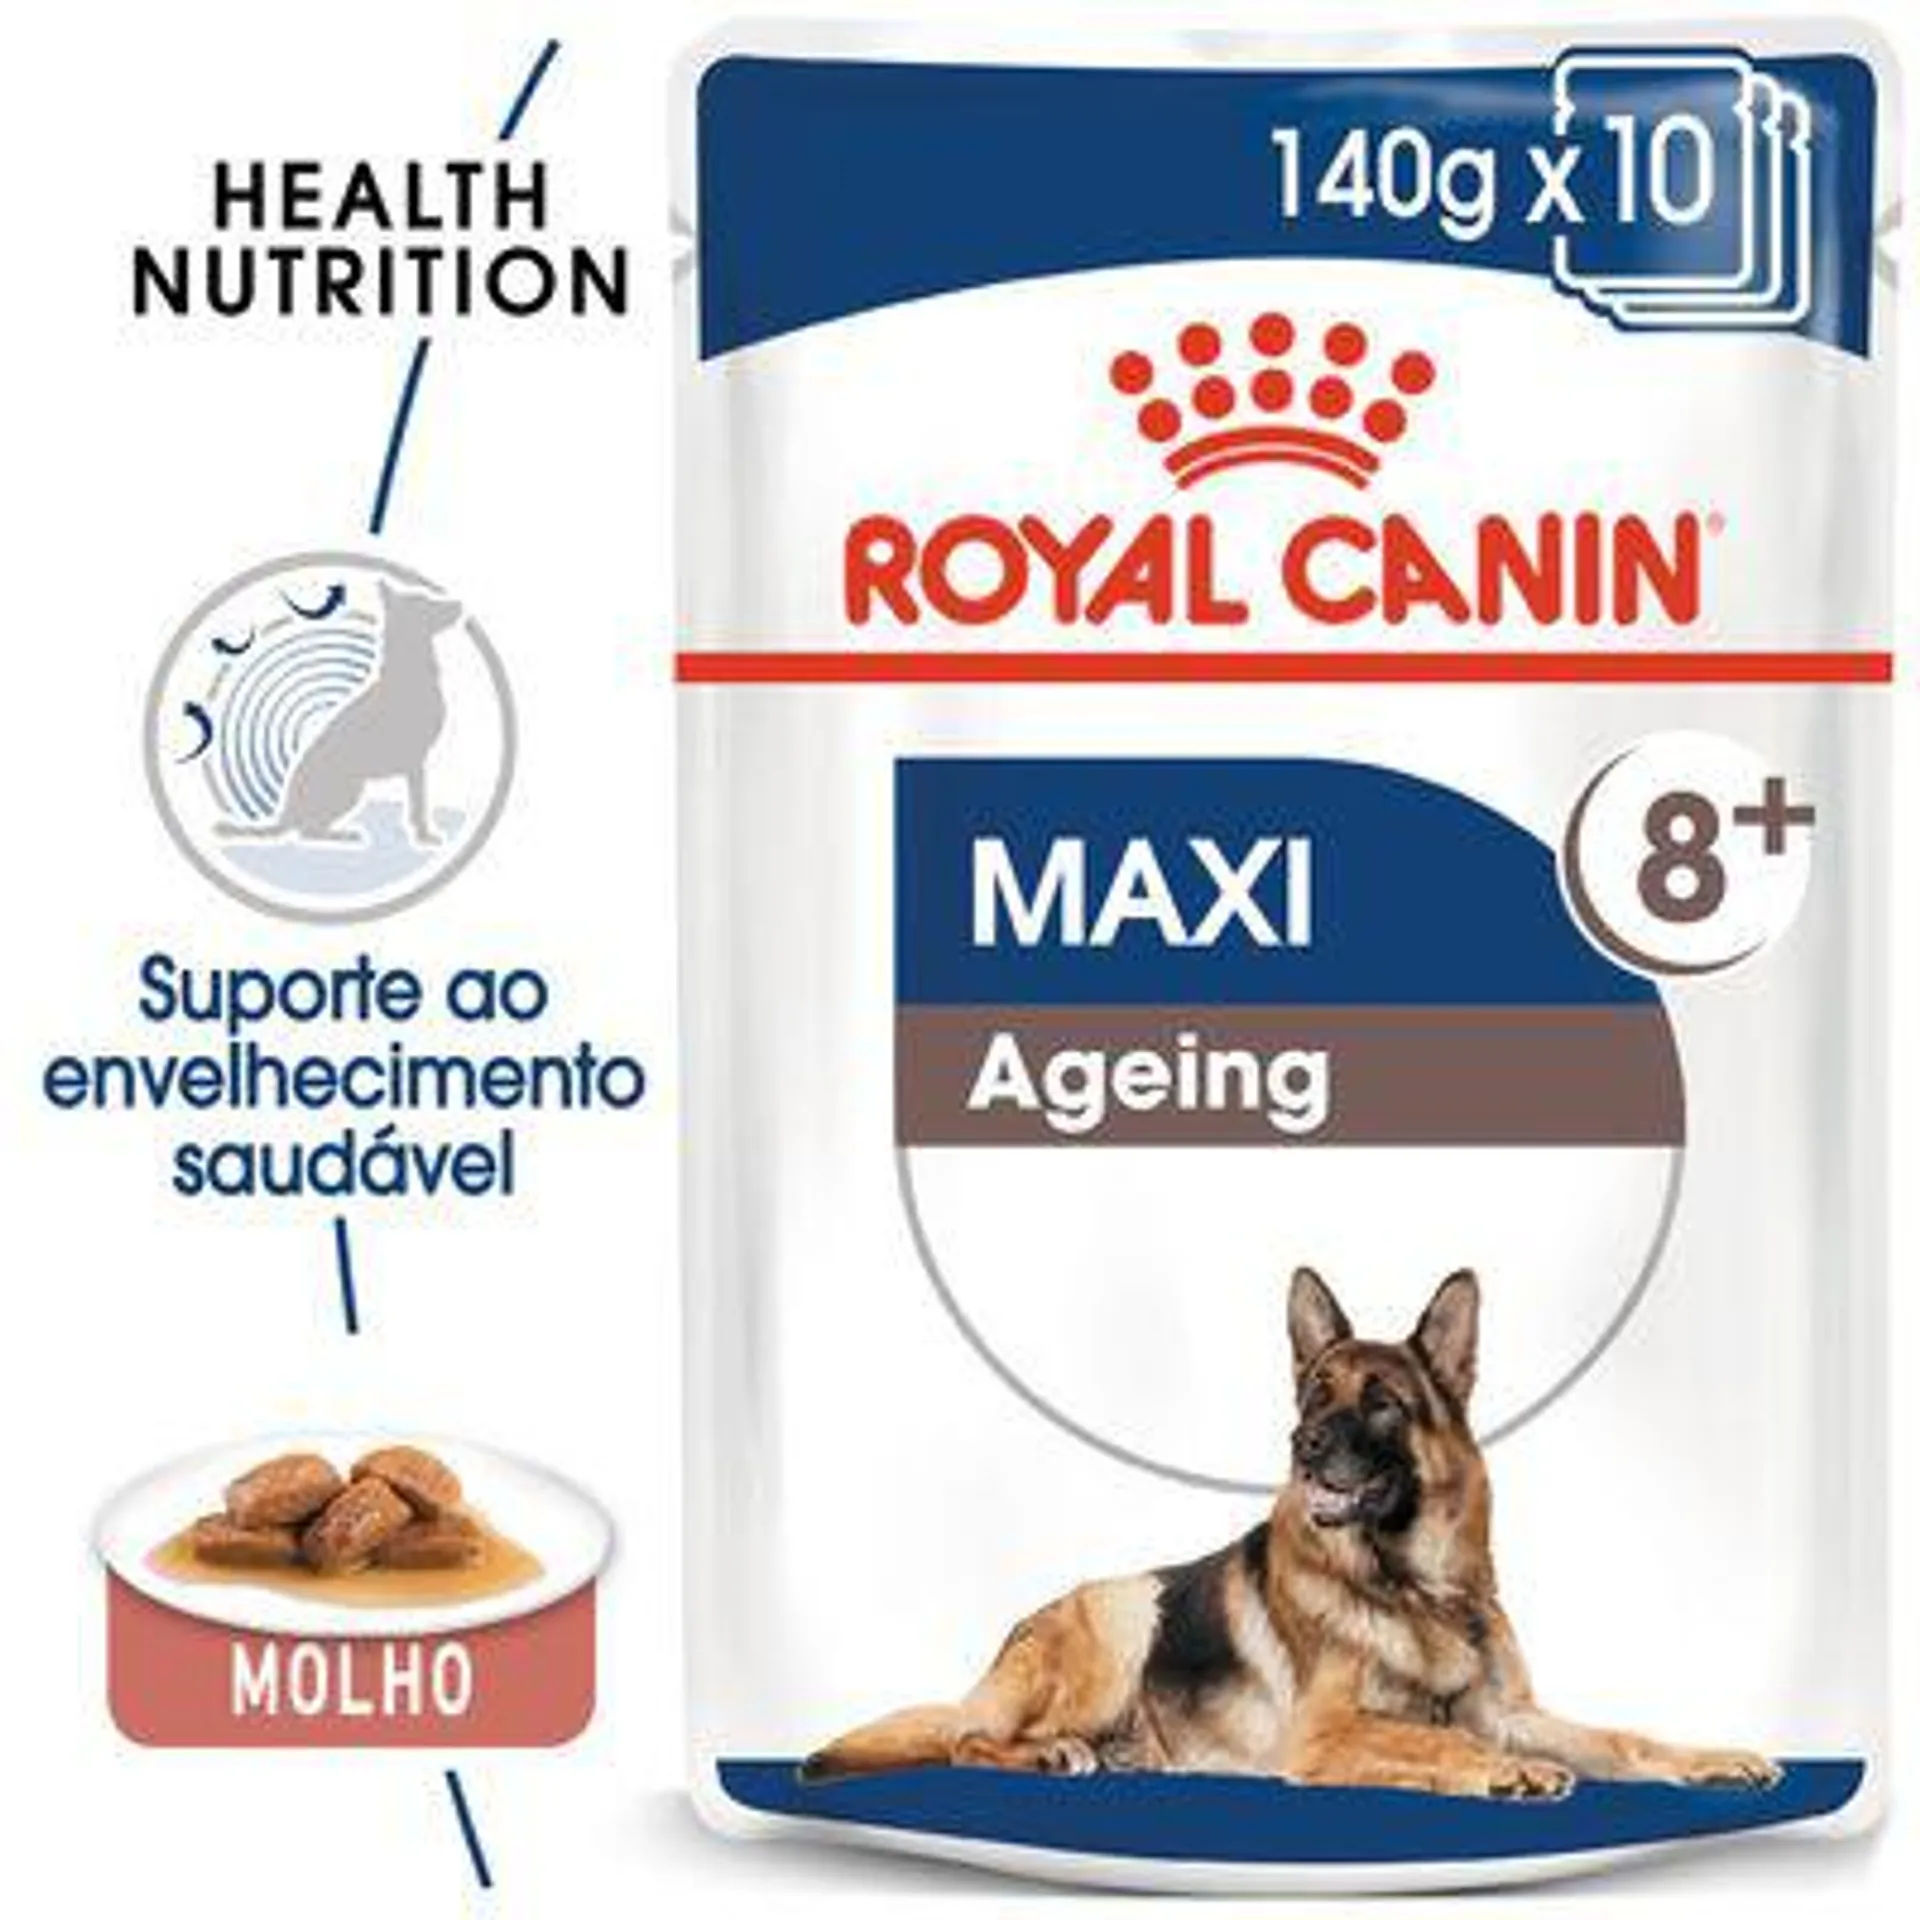 Royal Canin Maxi Ageing em molho comida húmida para cães